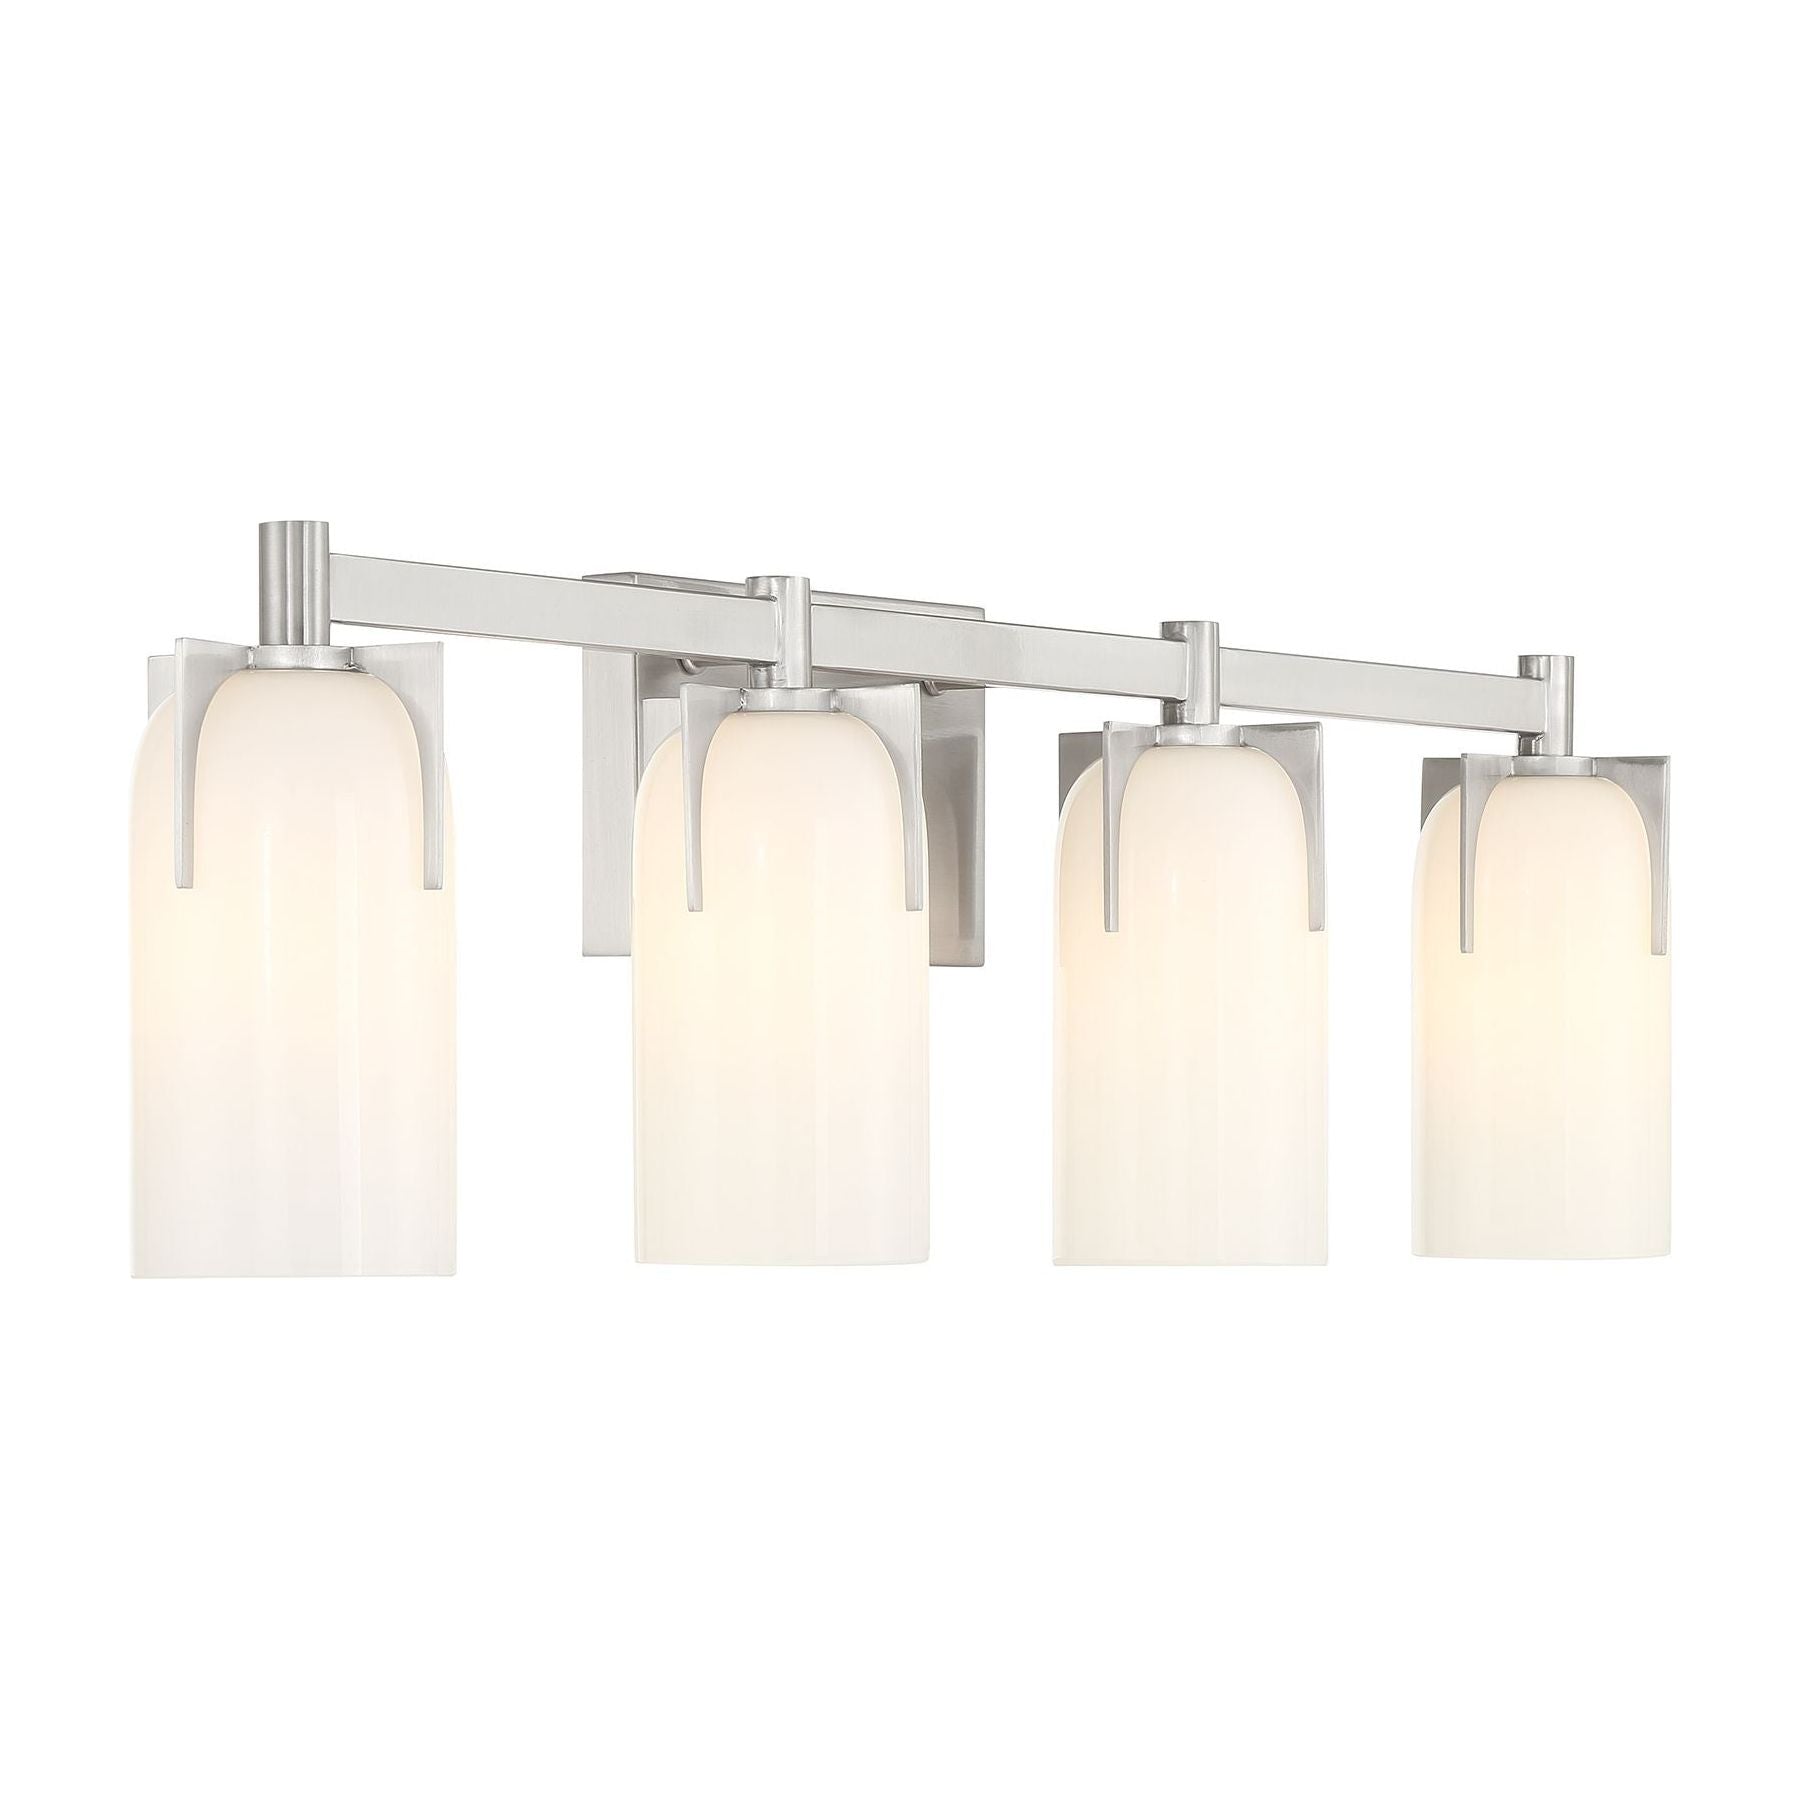 Caldwell 4-Light Bathroom Vanity Light